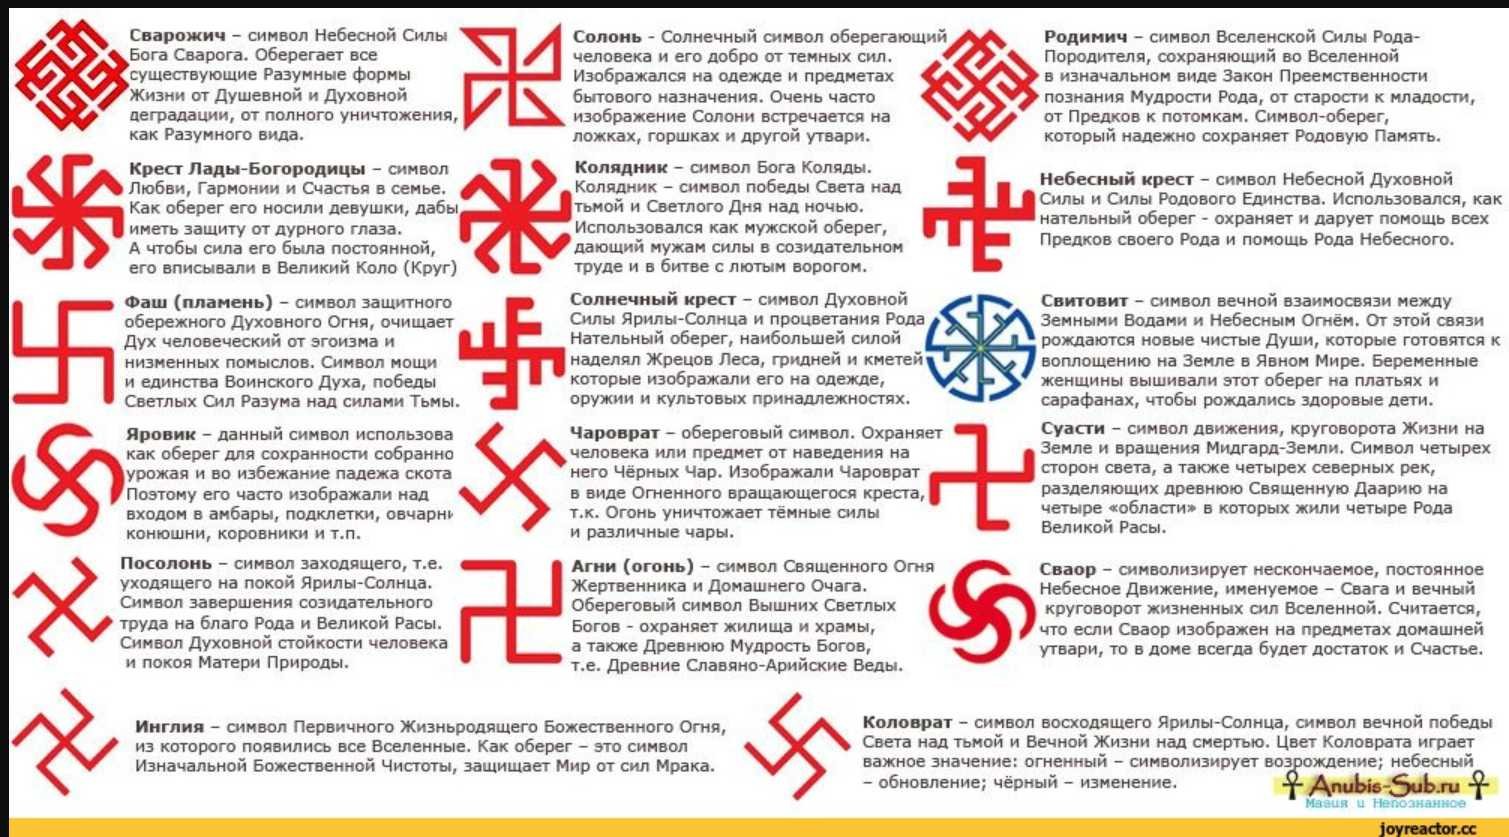 Выясните какие символы. Солярные славянские символы-обереги. Языческие символы древней Руси обереги. Солярные символы славян обереги.